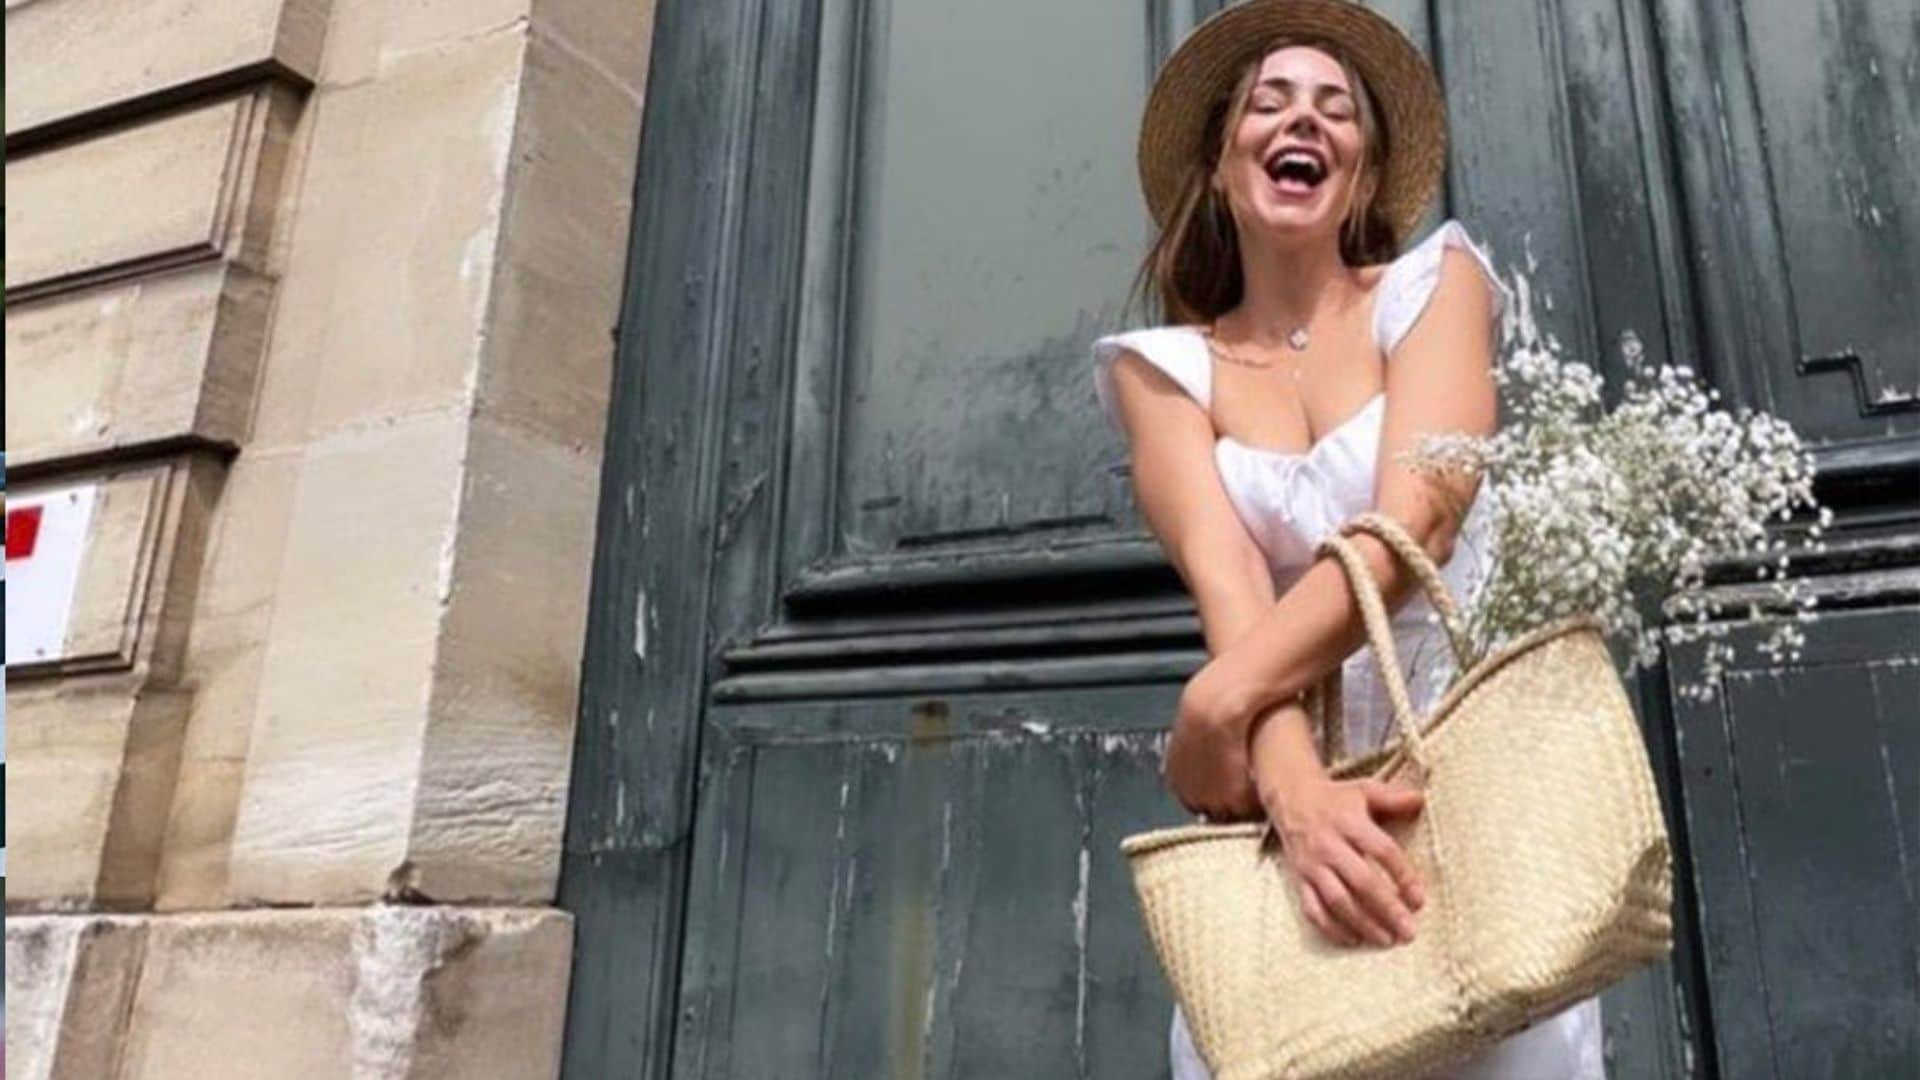 Tras su viaje a Grecia, Camila Sodi comparte vistazos de su travesía por Francia